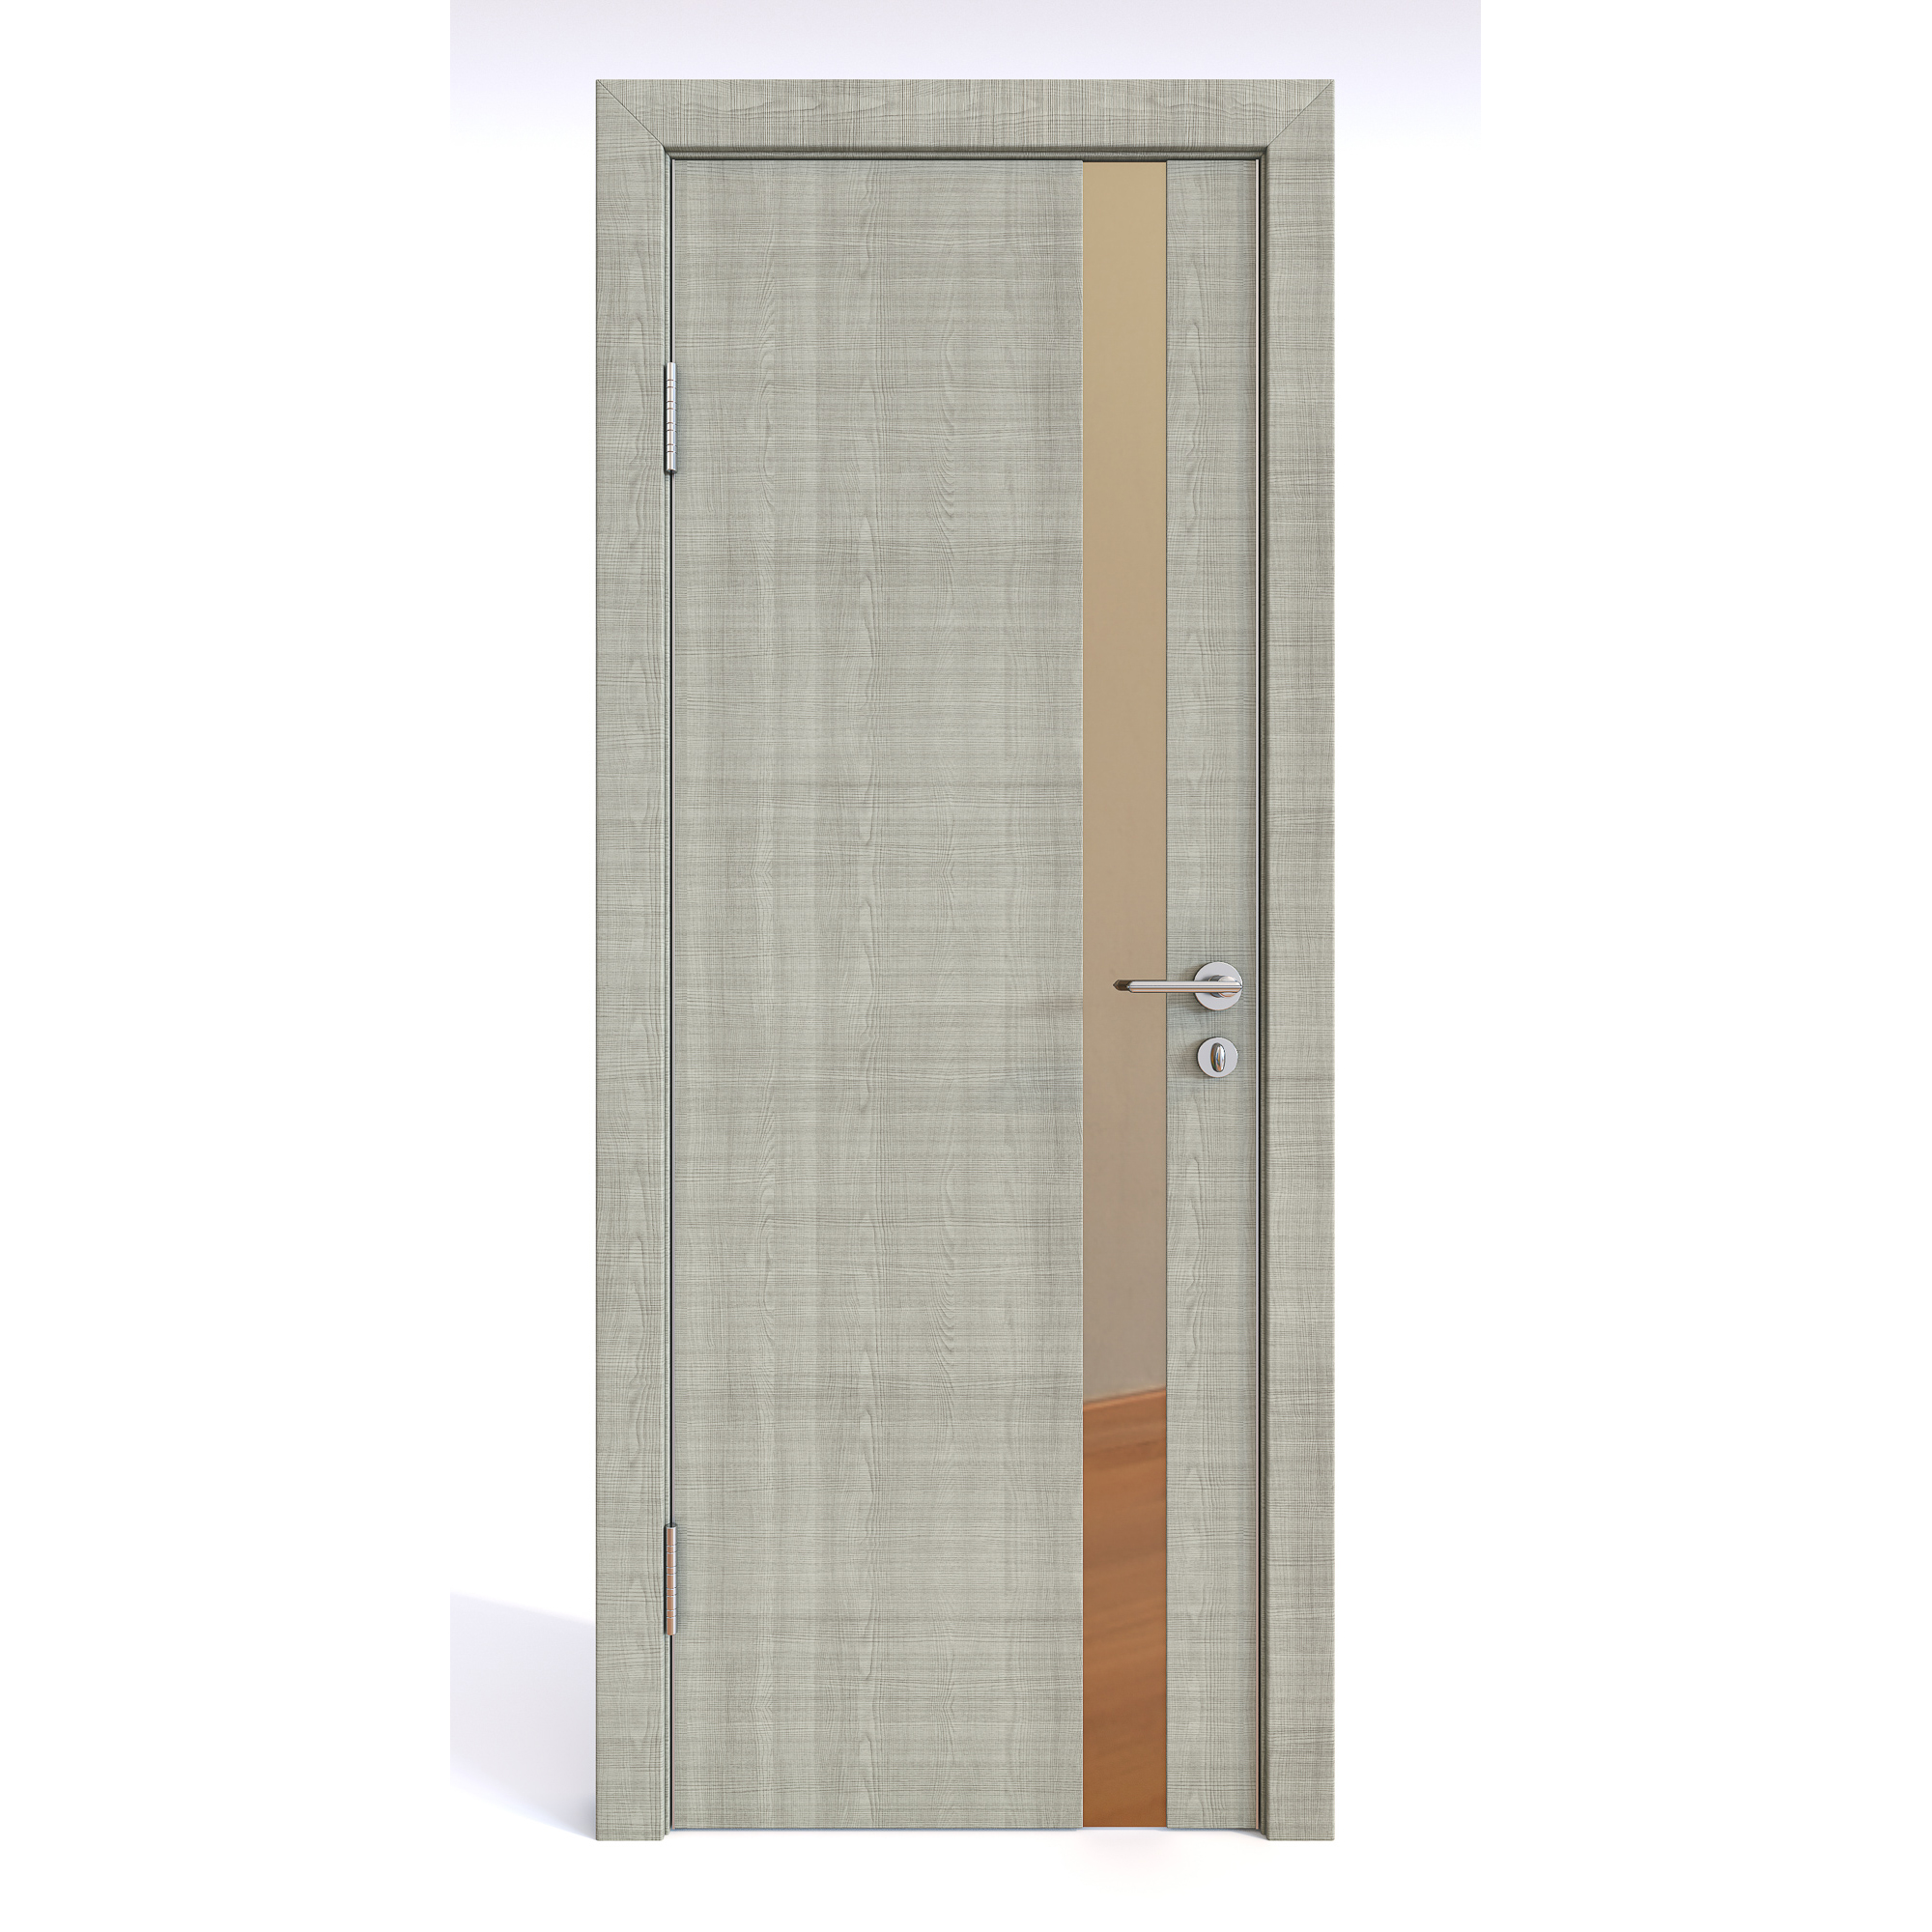 фото Межкомнатная шумоизоляционная дверь до-607 серый дуб/бронза 200х60 дверная линия